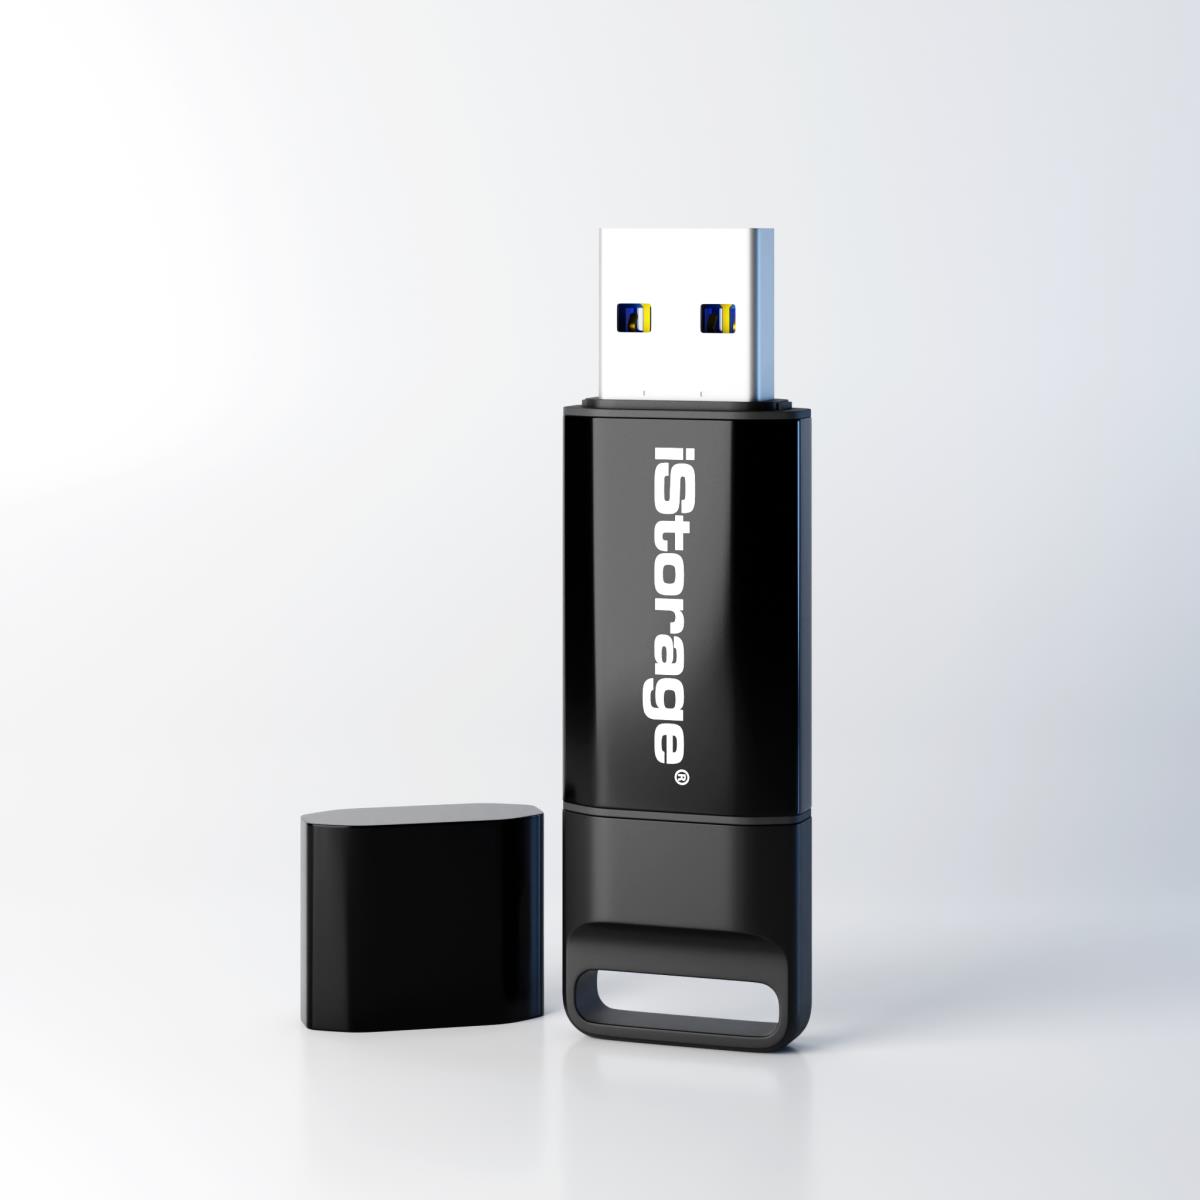 Clé USB 3.0 Intégral Memory 16 Go - Noir - JPG